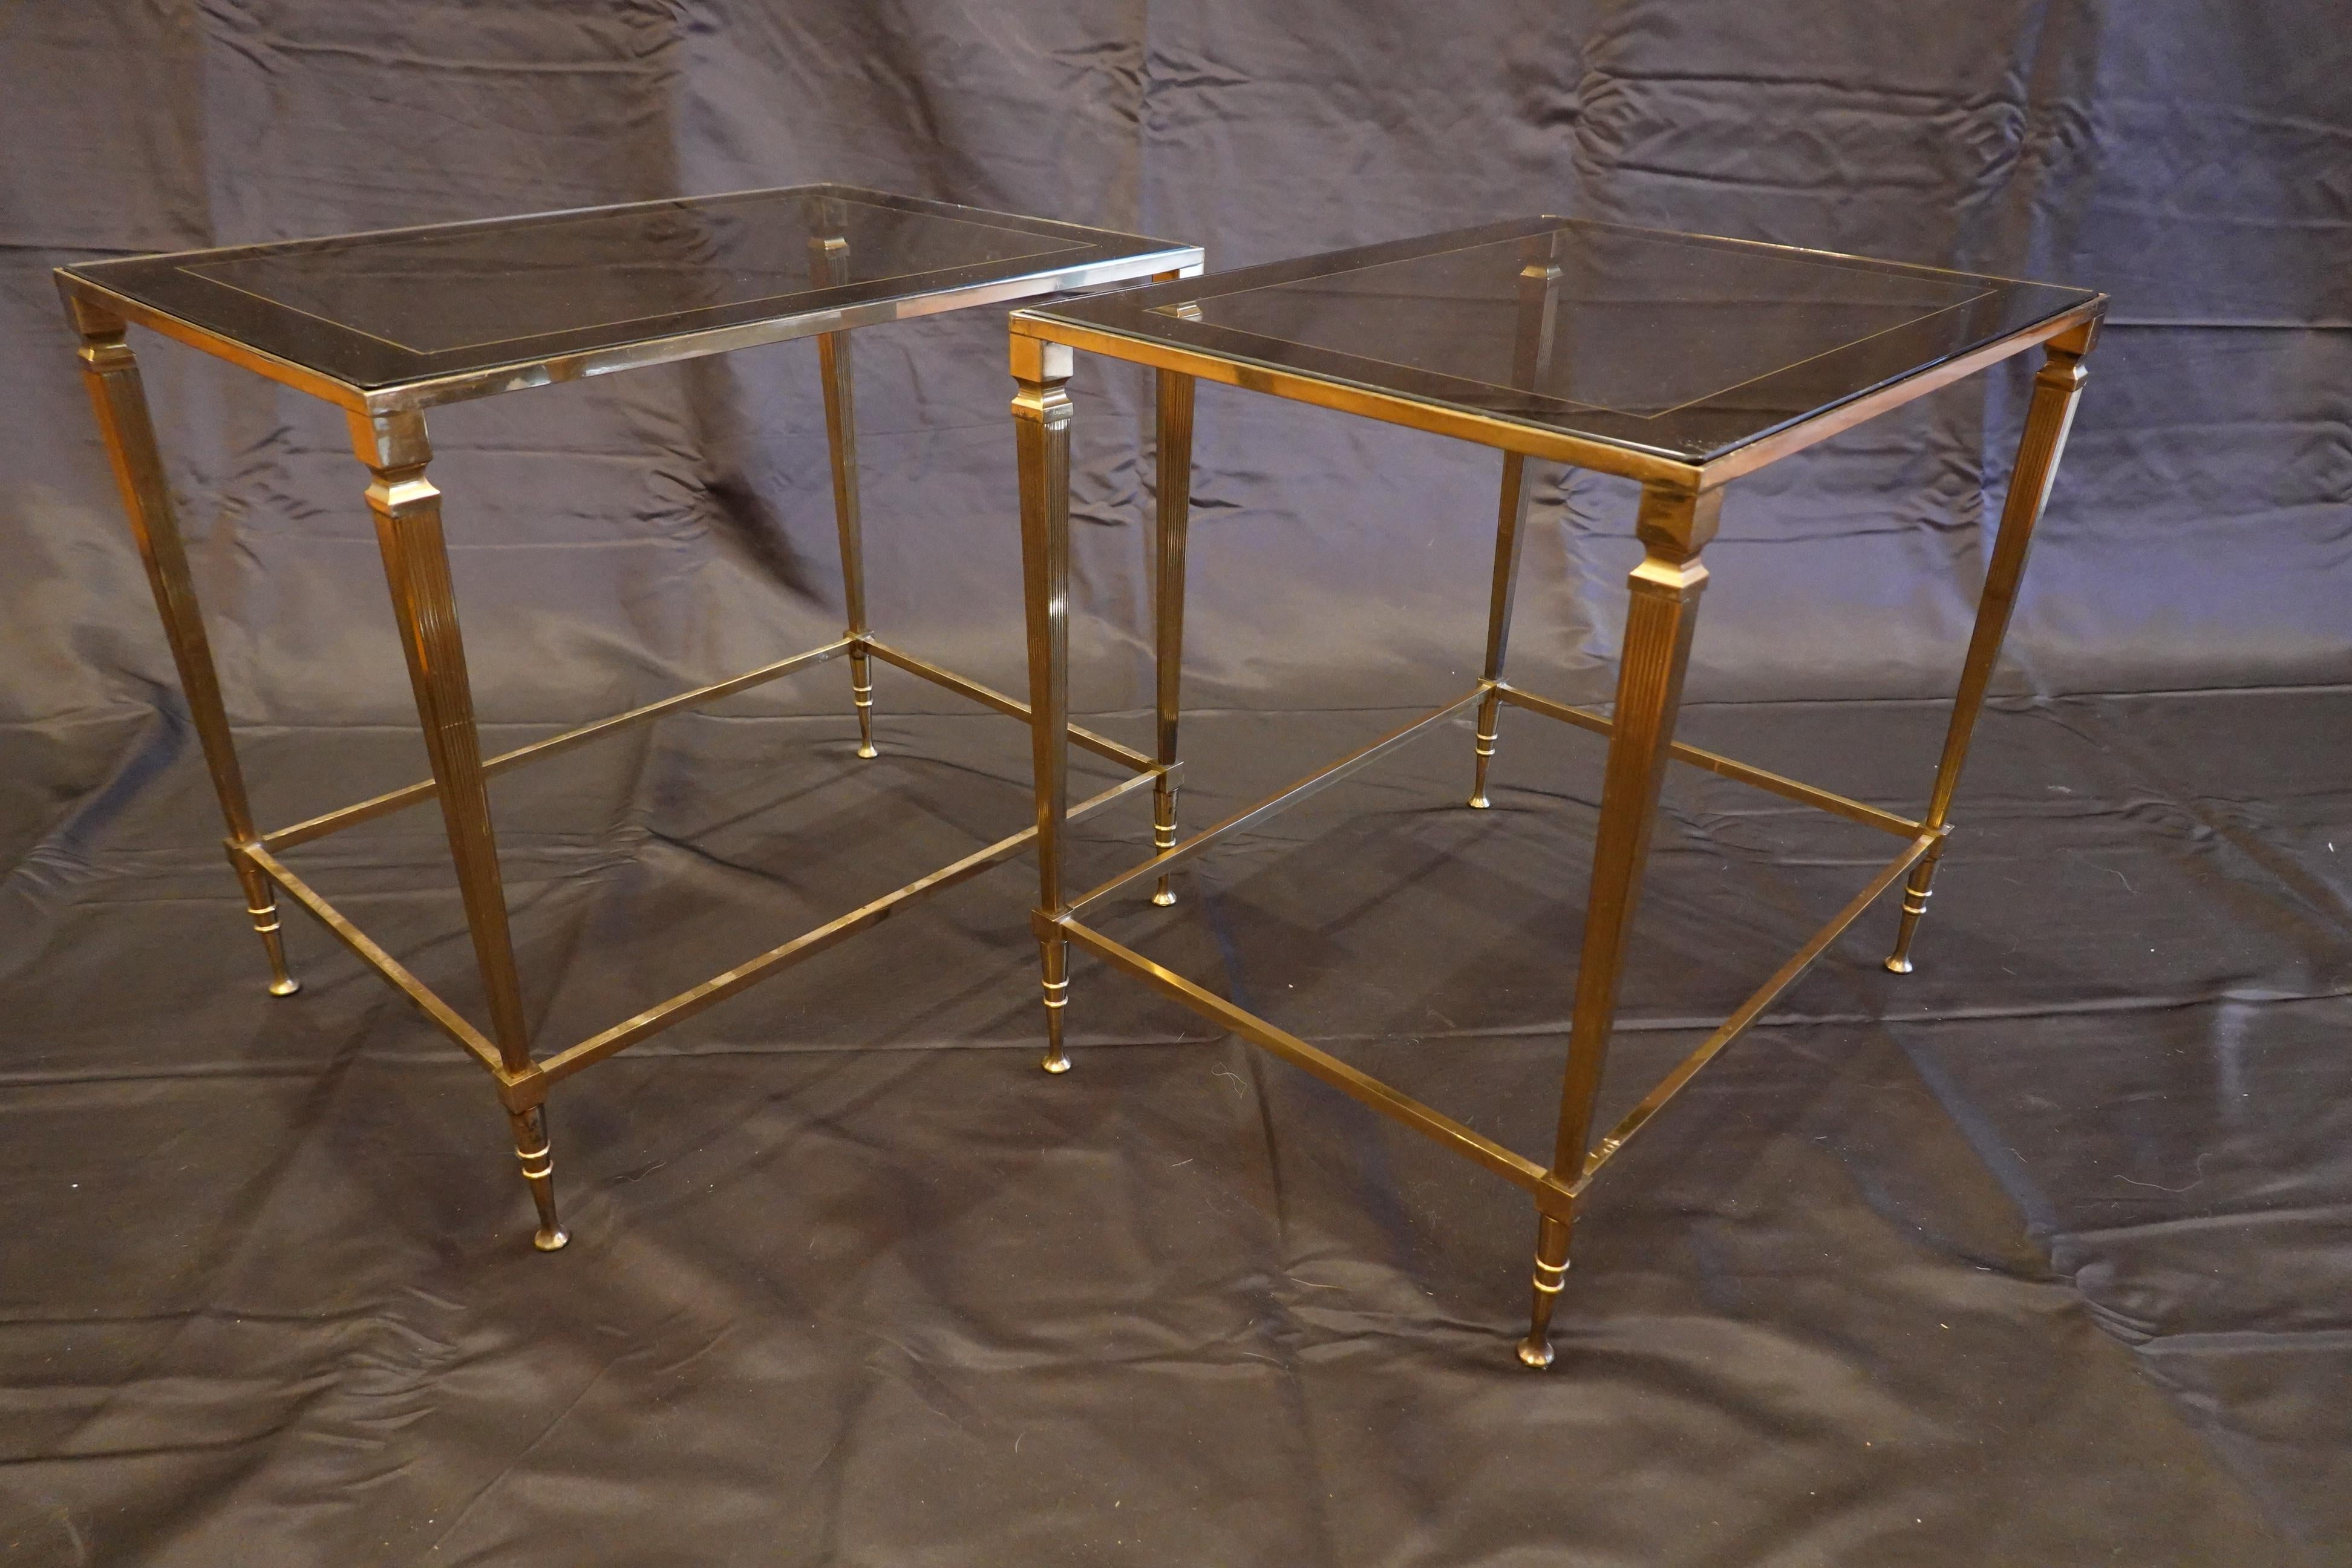 Paire de tables d'appoint italiennes en laiton doré avec dessus en verre, (circa 1970). Ces tables élégantes sont dotées de plateaux en verre légèrement fumé avec des bandes argentées sur le pourtour, et de simples pieds cannelés se terminant par